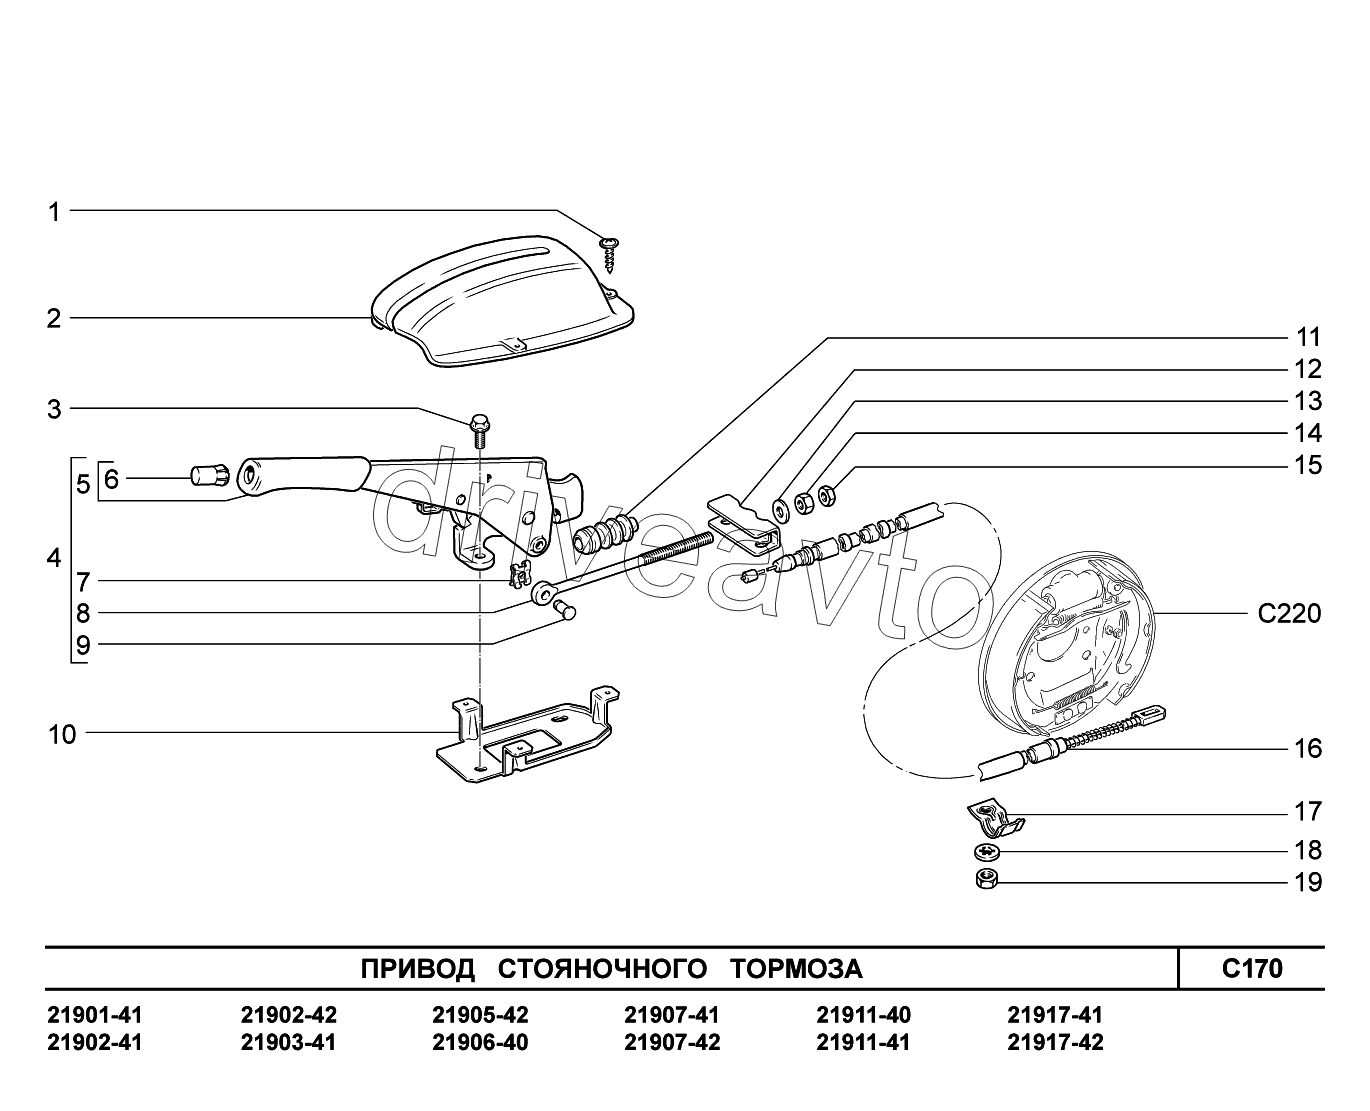 C170. Привод стояночного тормоза